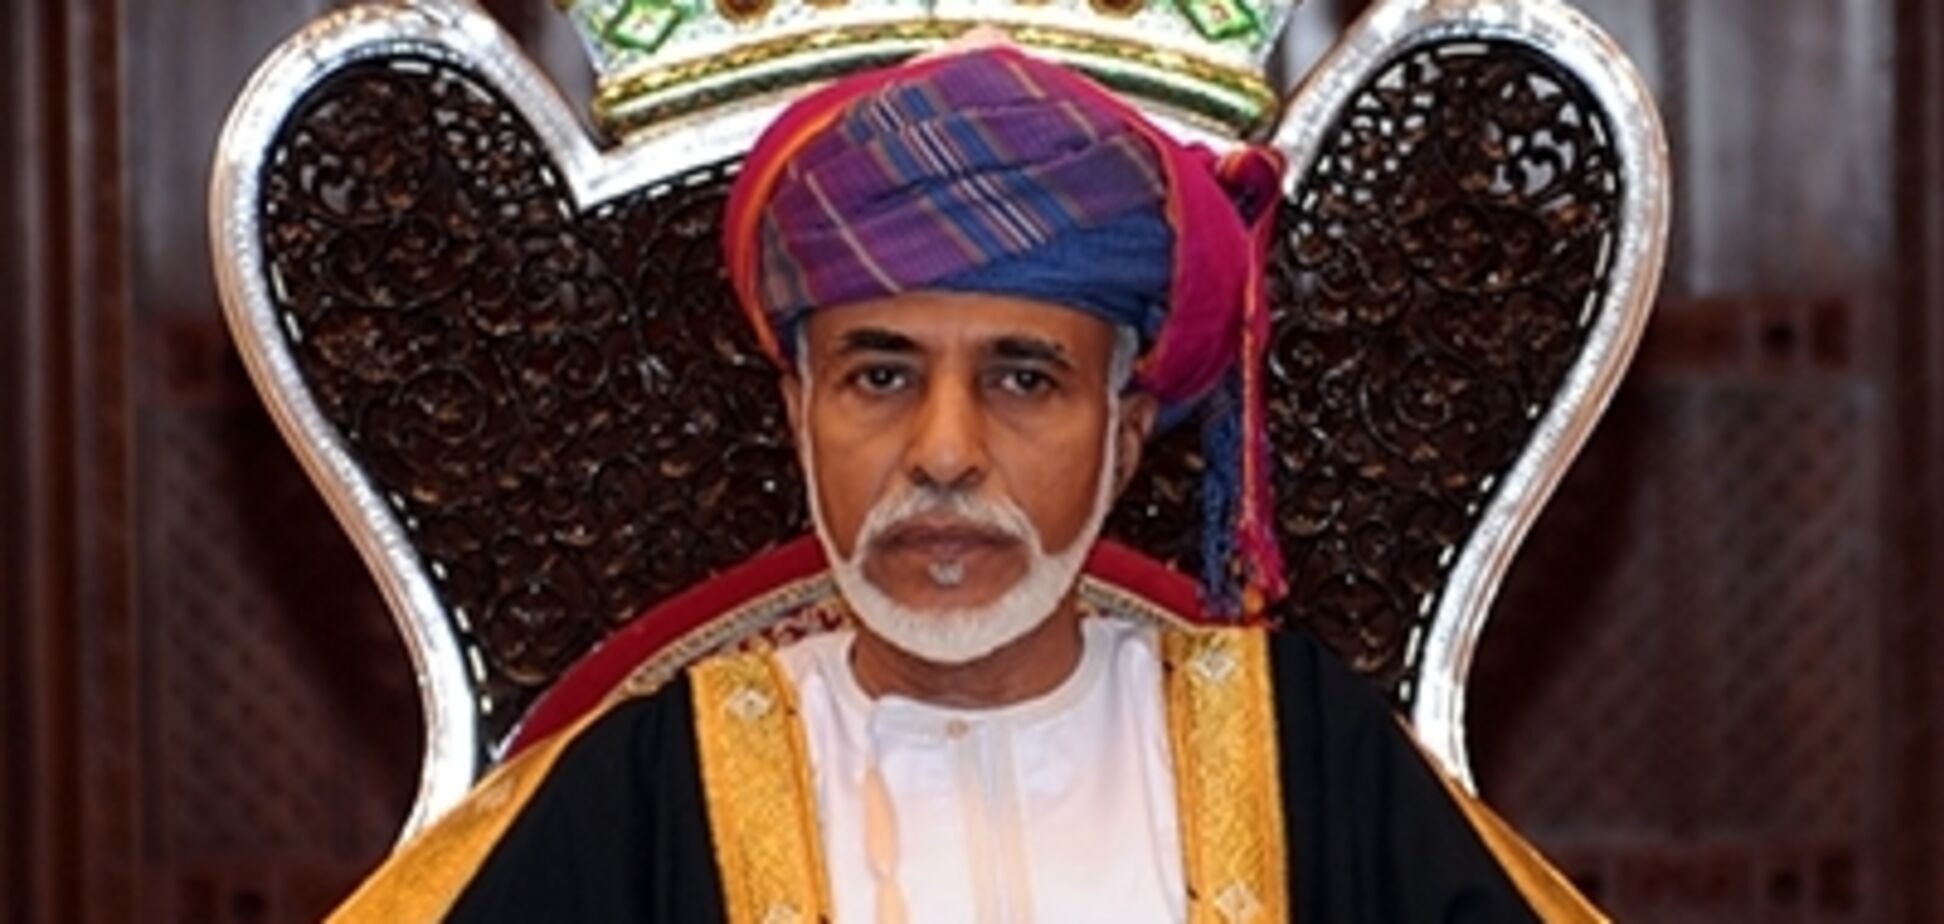 Палаци, яхти та десятки апартаментів: стало відомо про величезну спадщину султана Омана